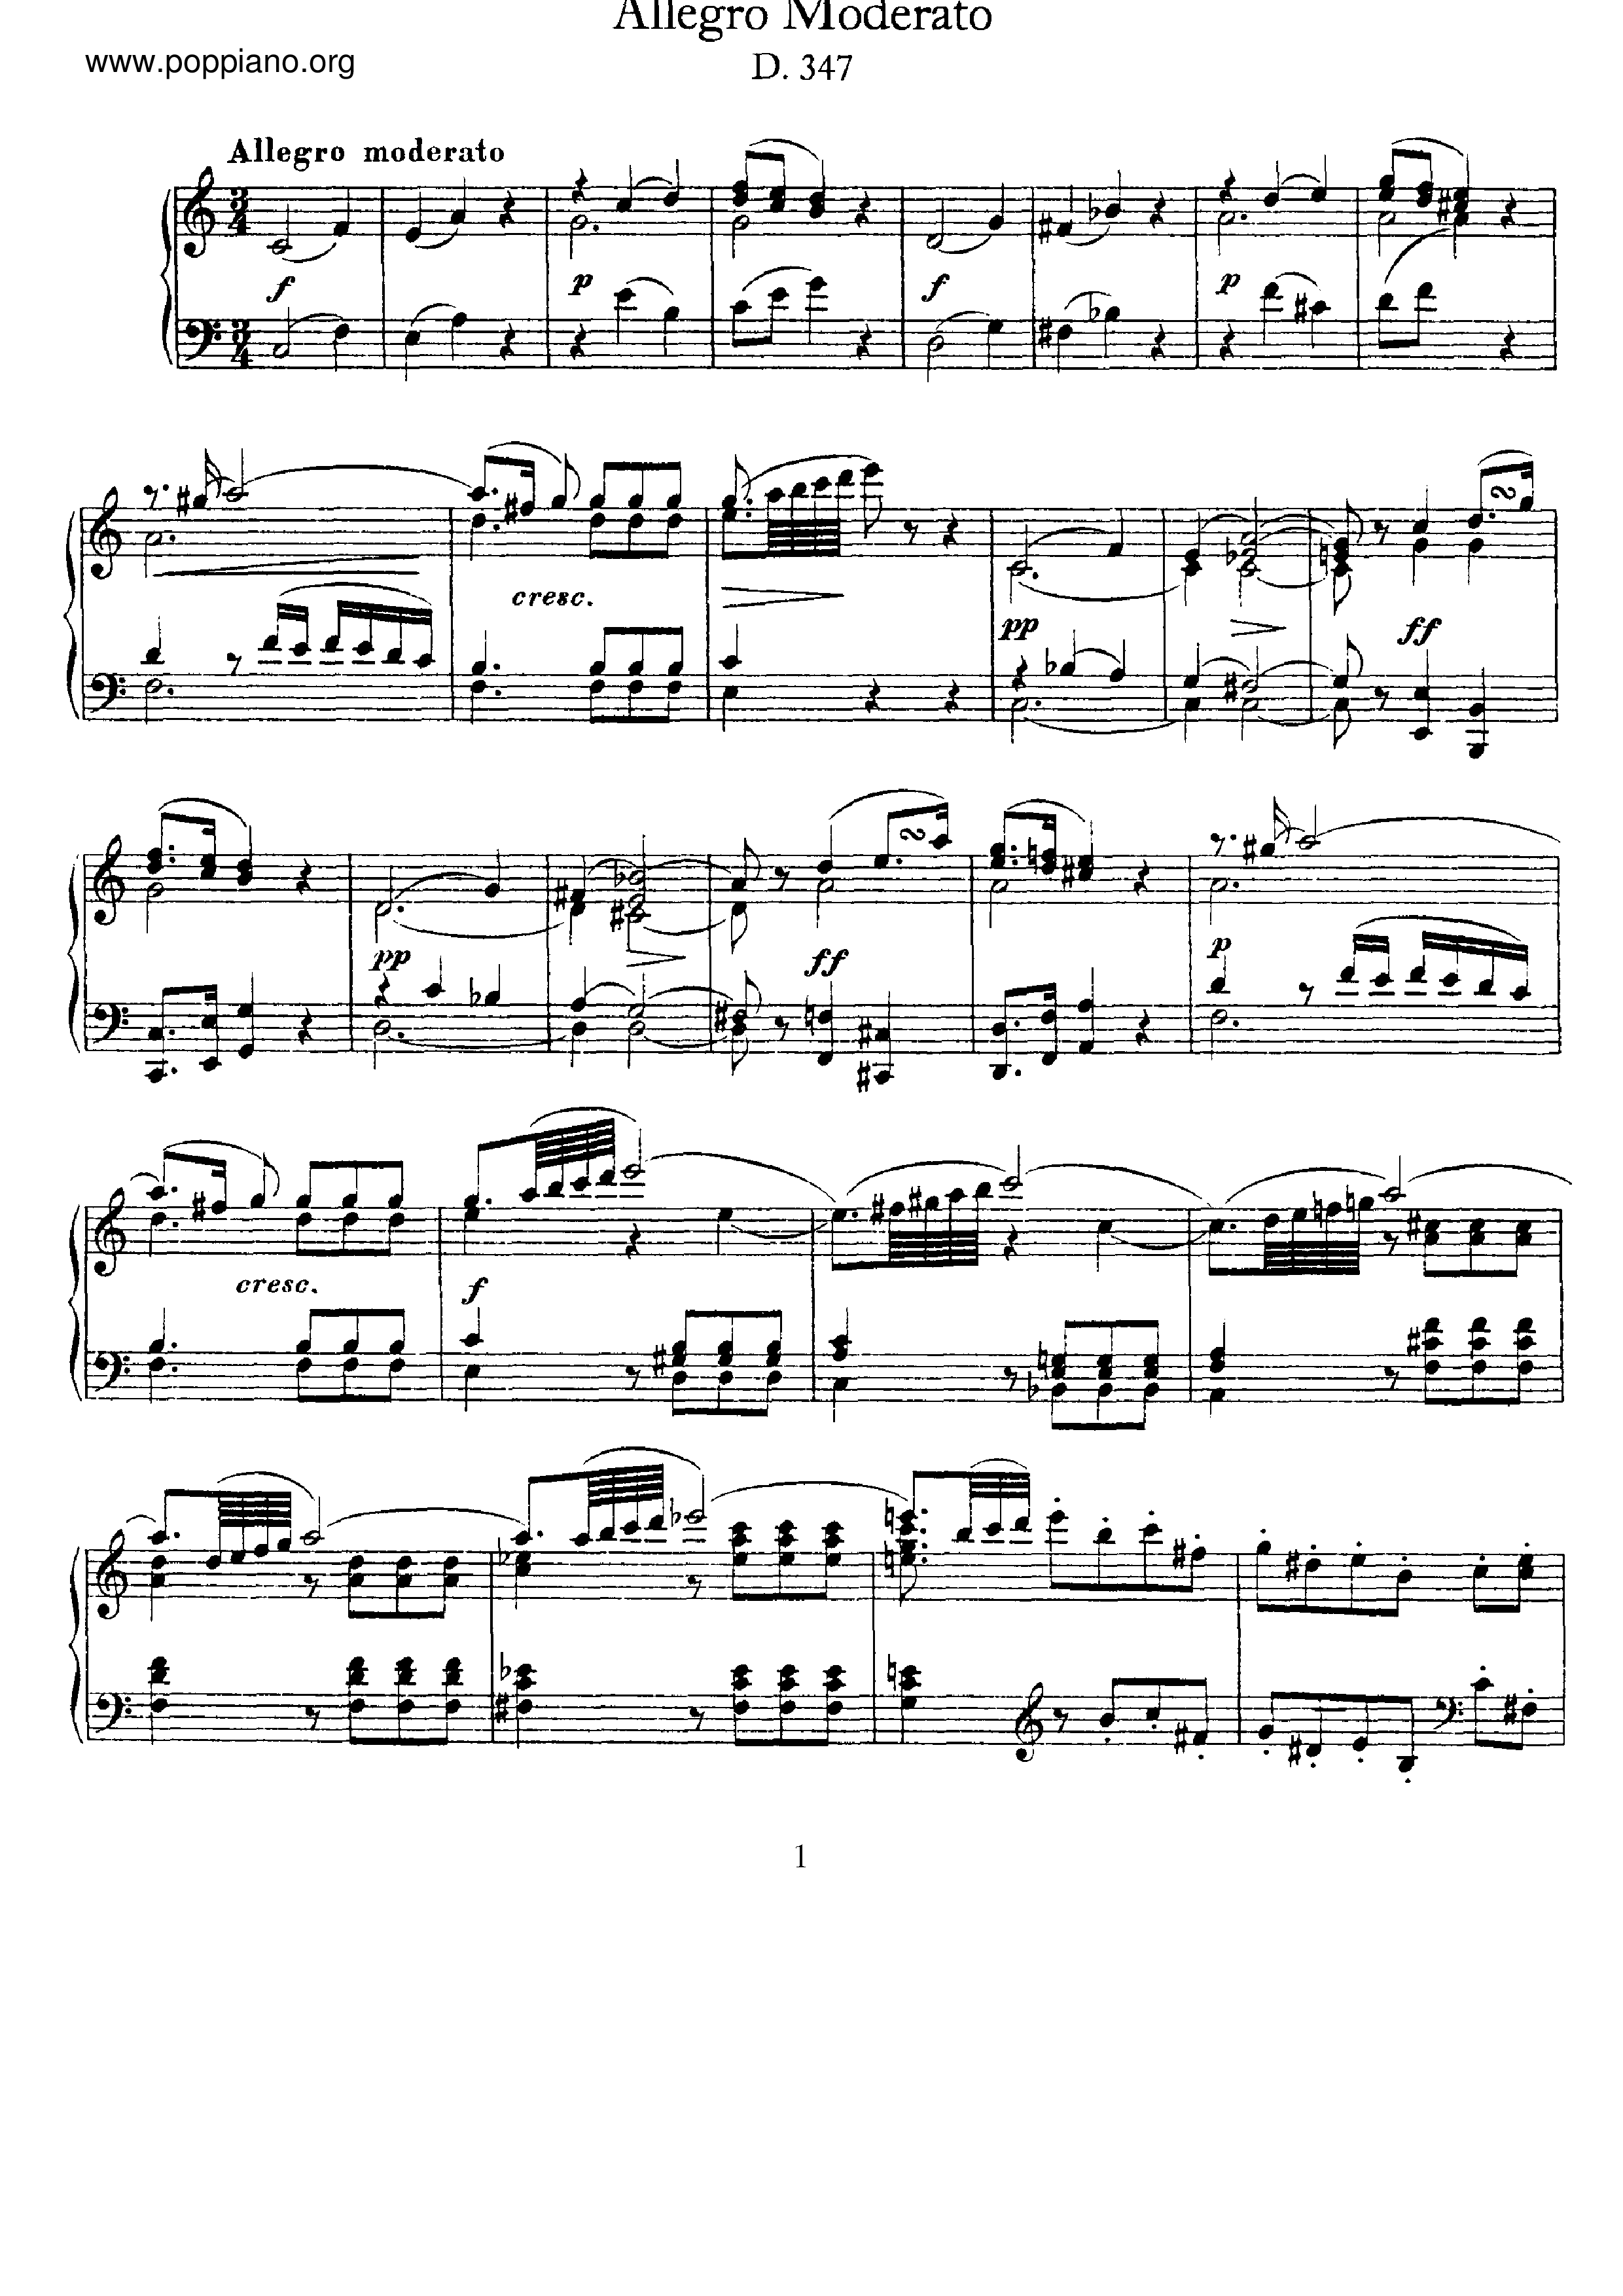 Allegro Moderato, D.347 Score